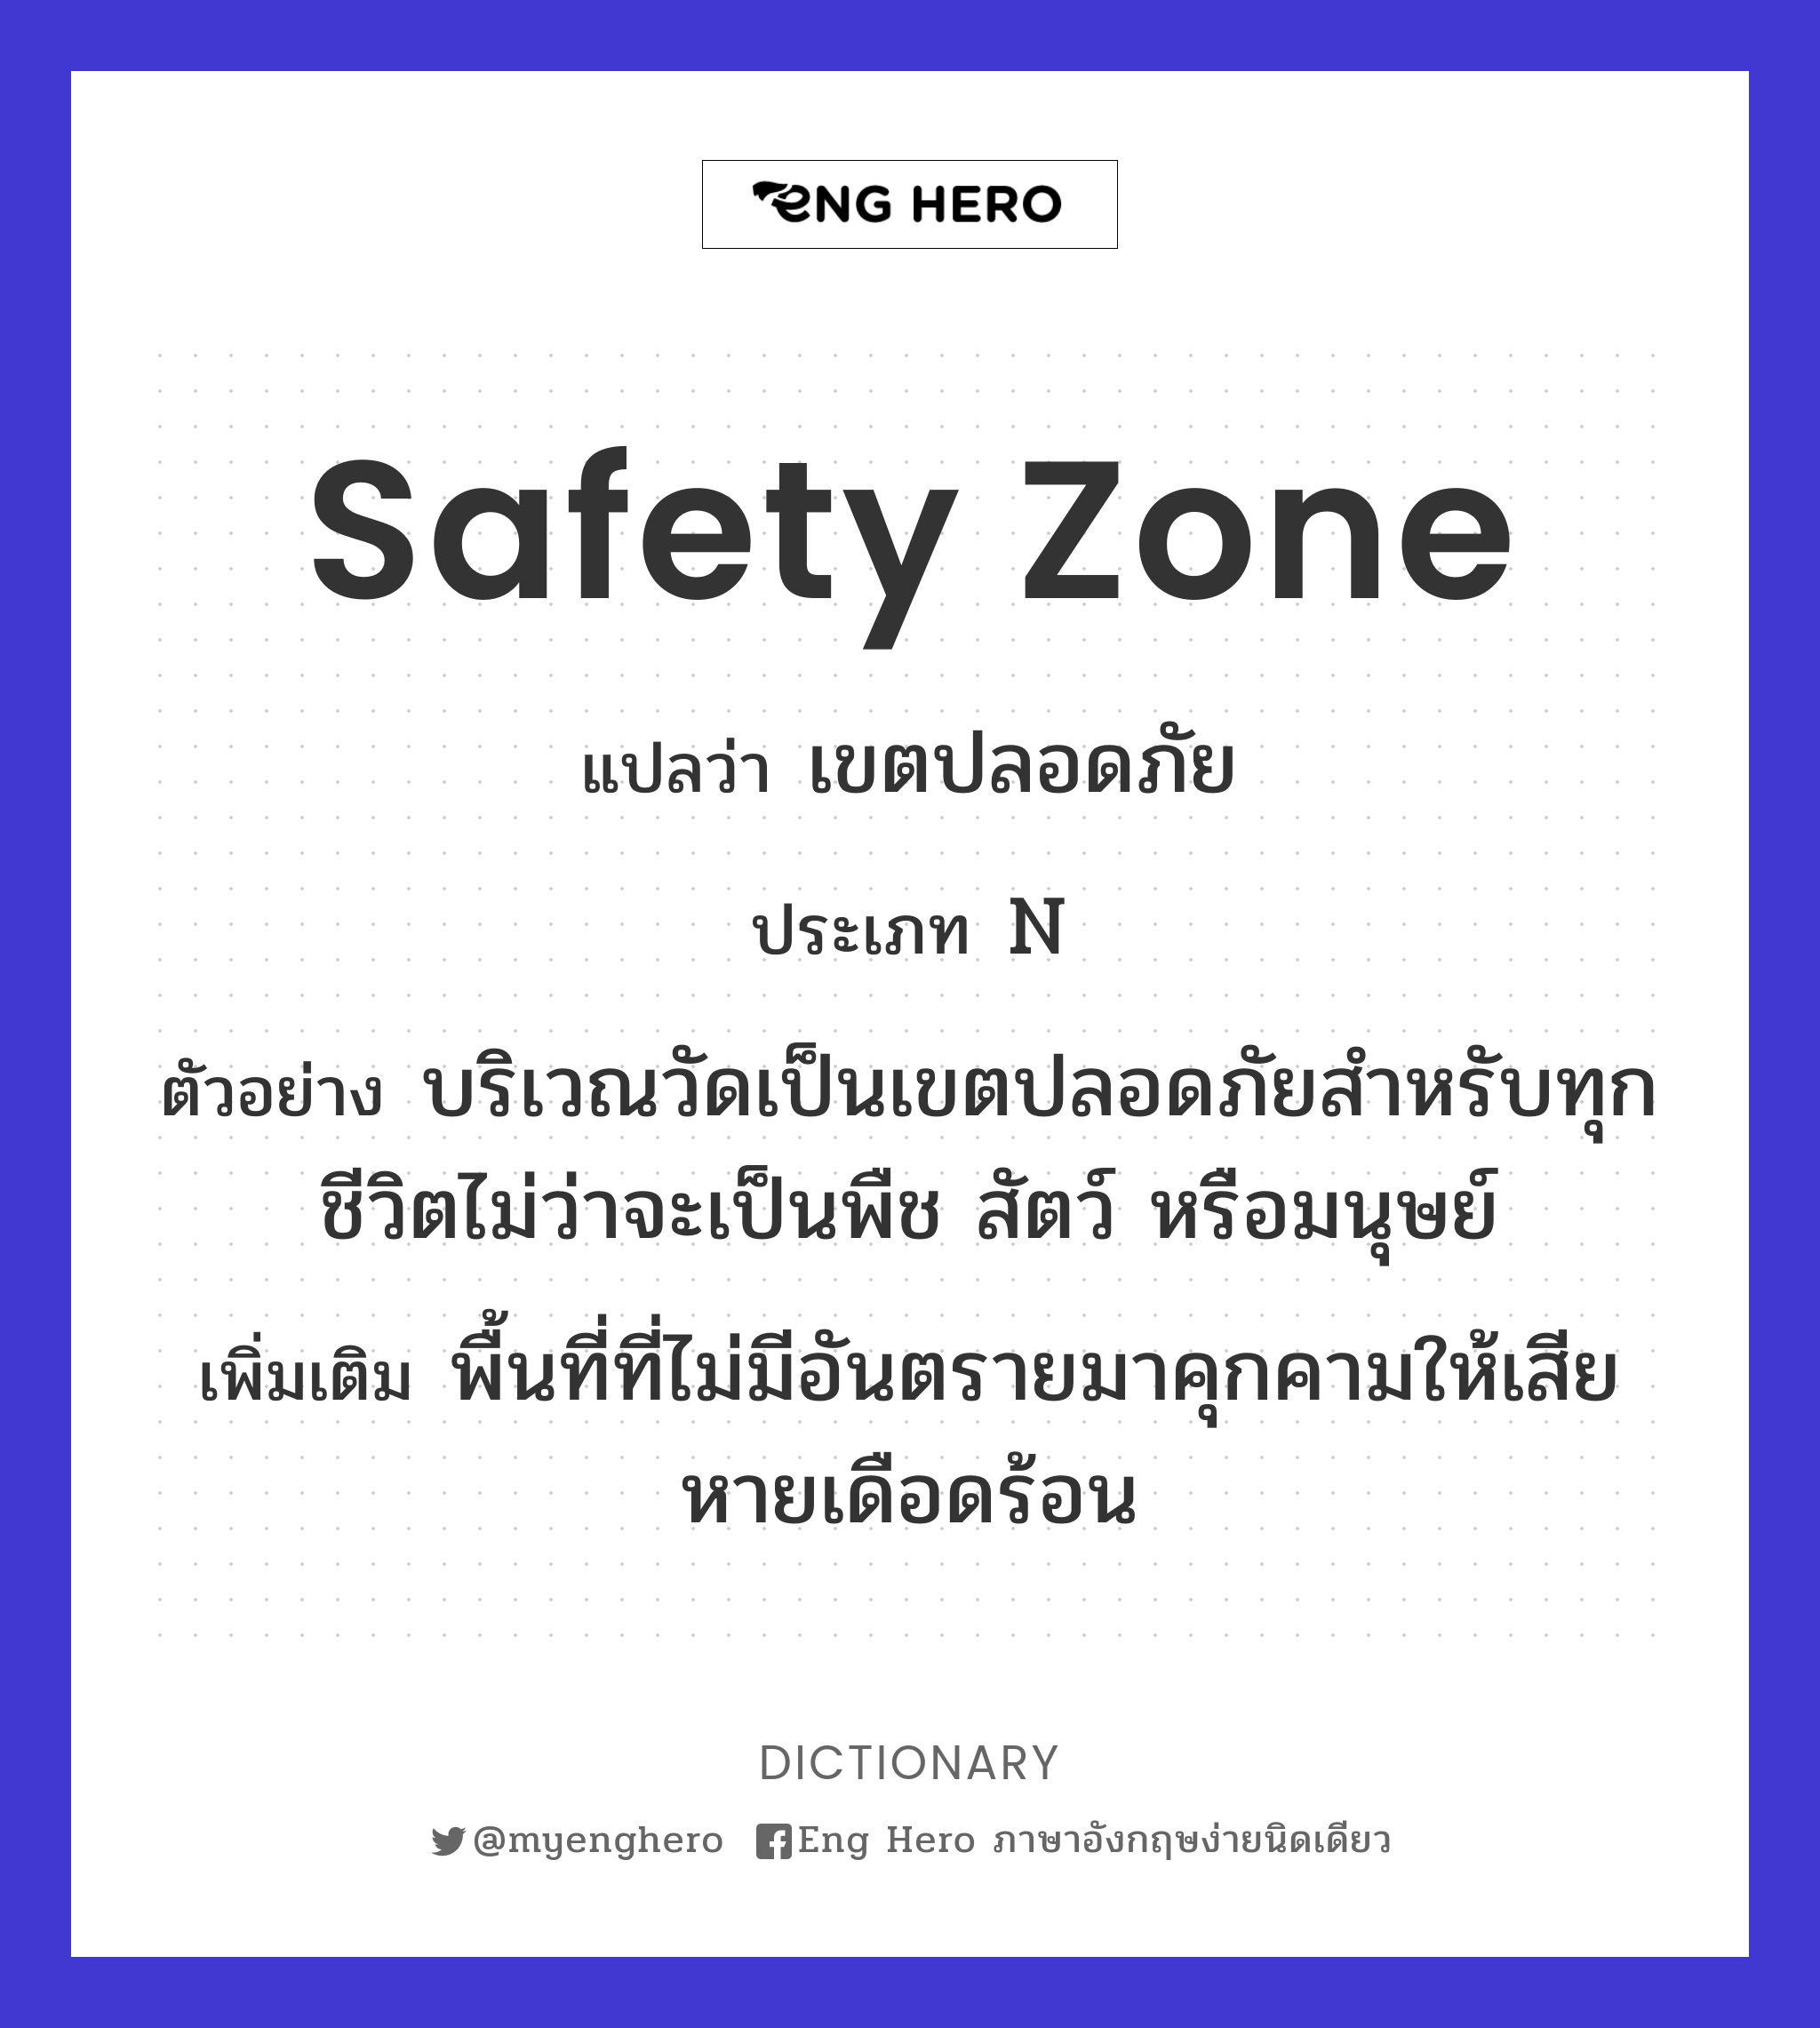 safety zone